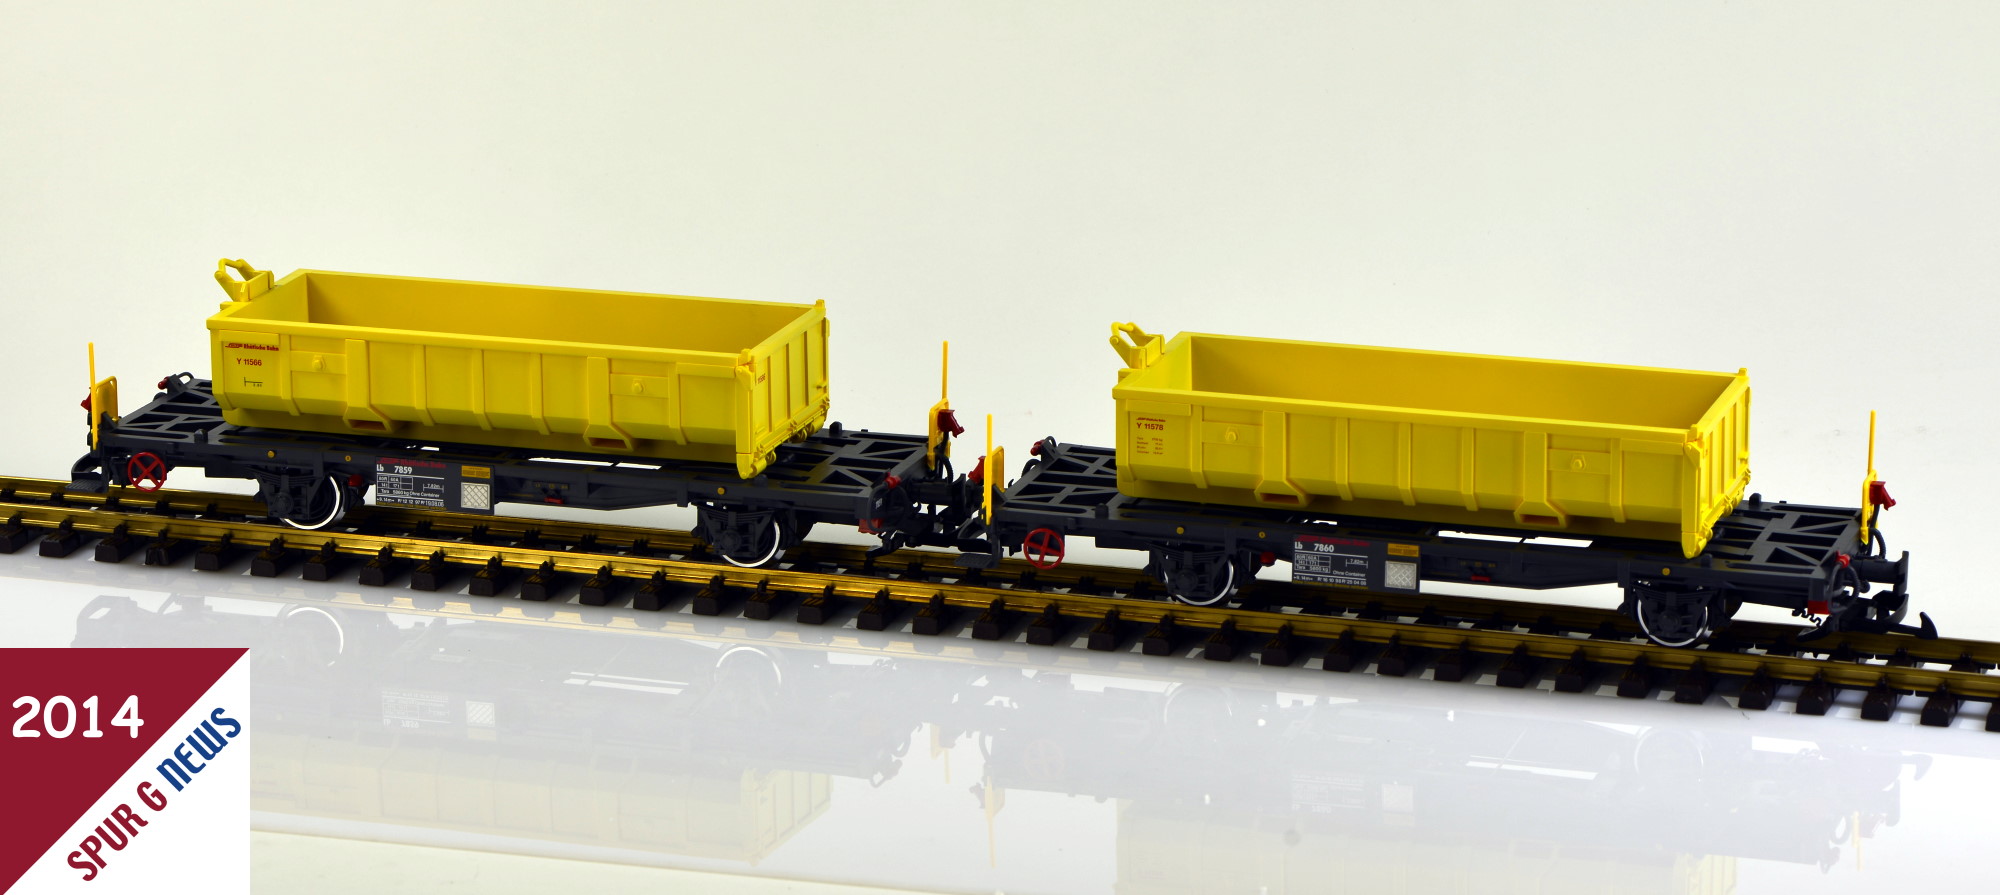 47899 LGB Containertragwagen mit Abraummulden - Wagenset aus 2013 - ausgeliefert 2014